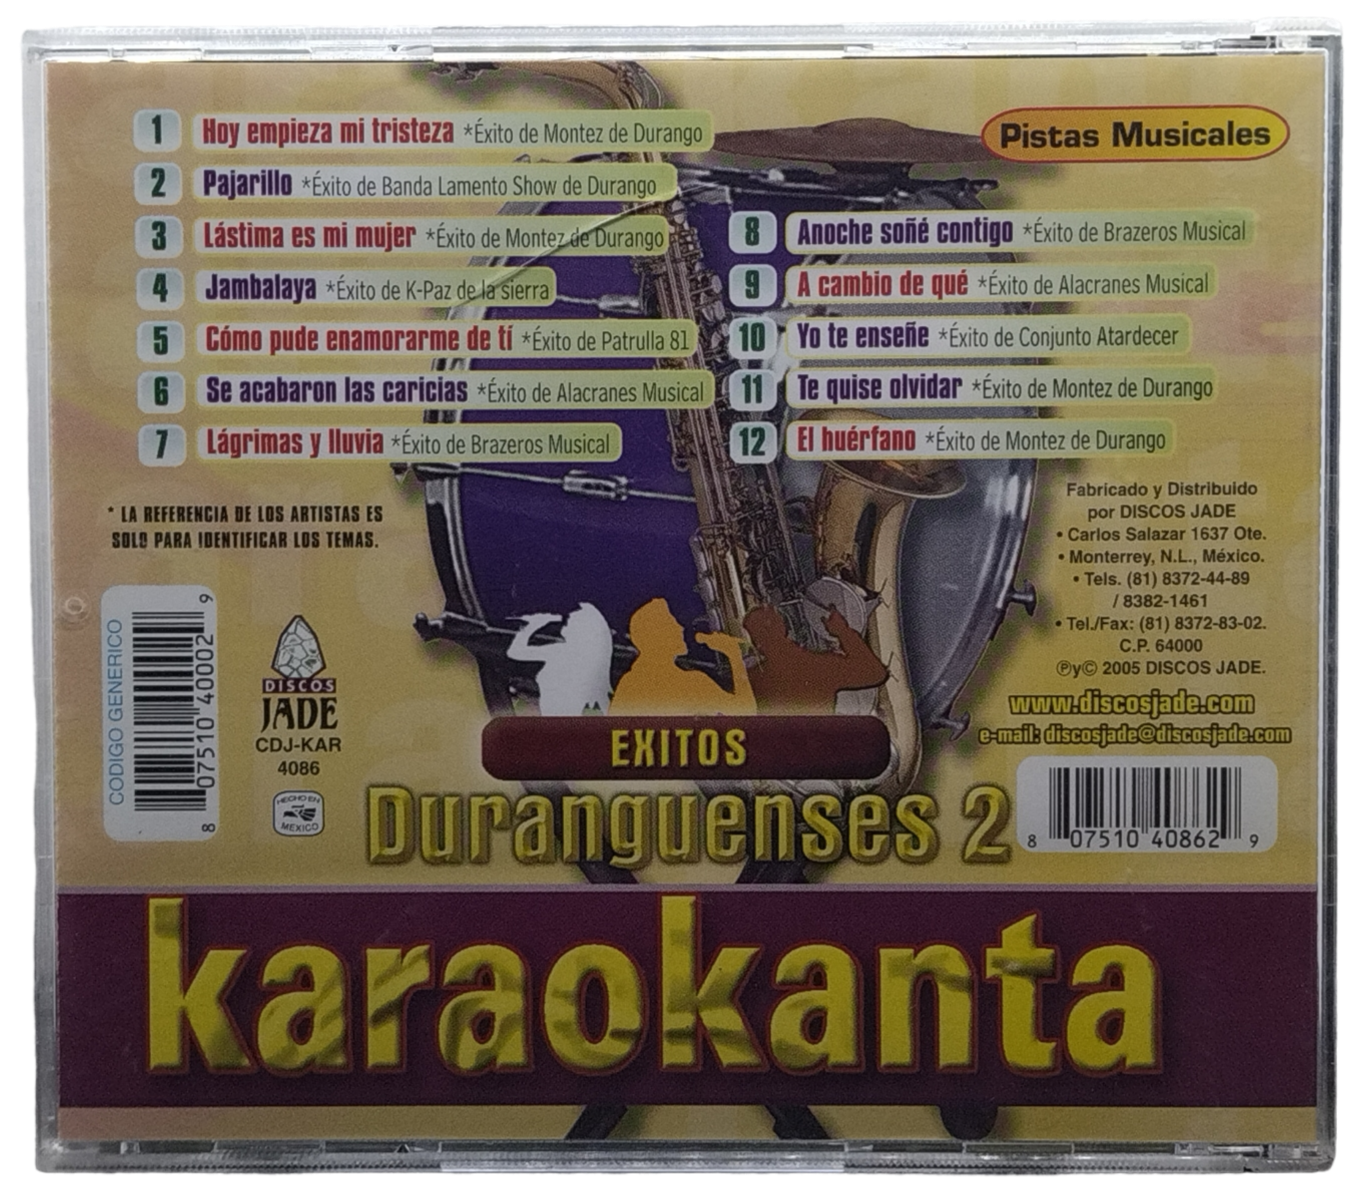 karaokanta  - canta como exitos duranguenses 2